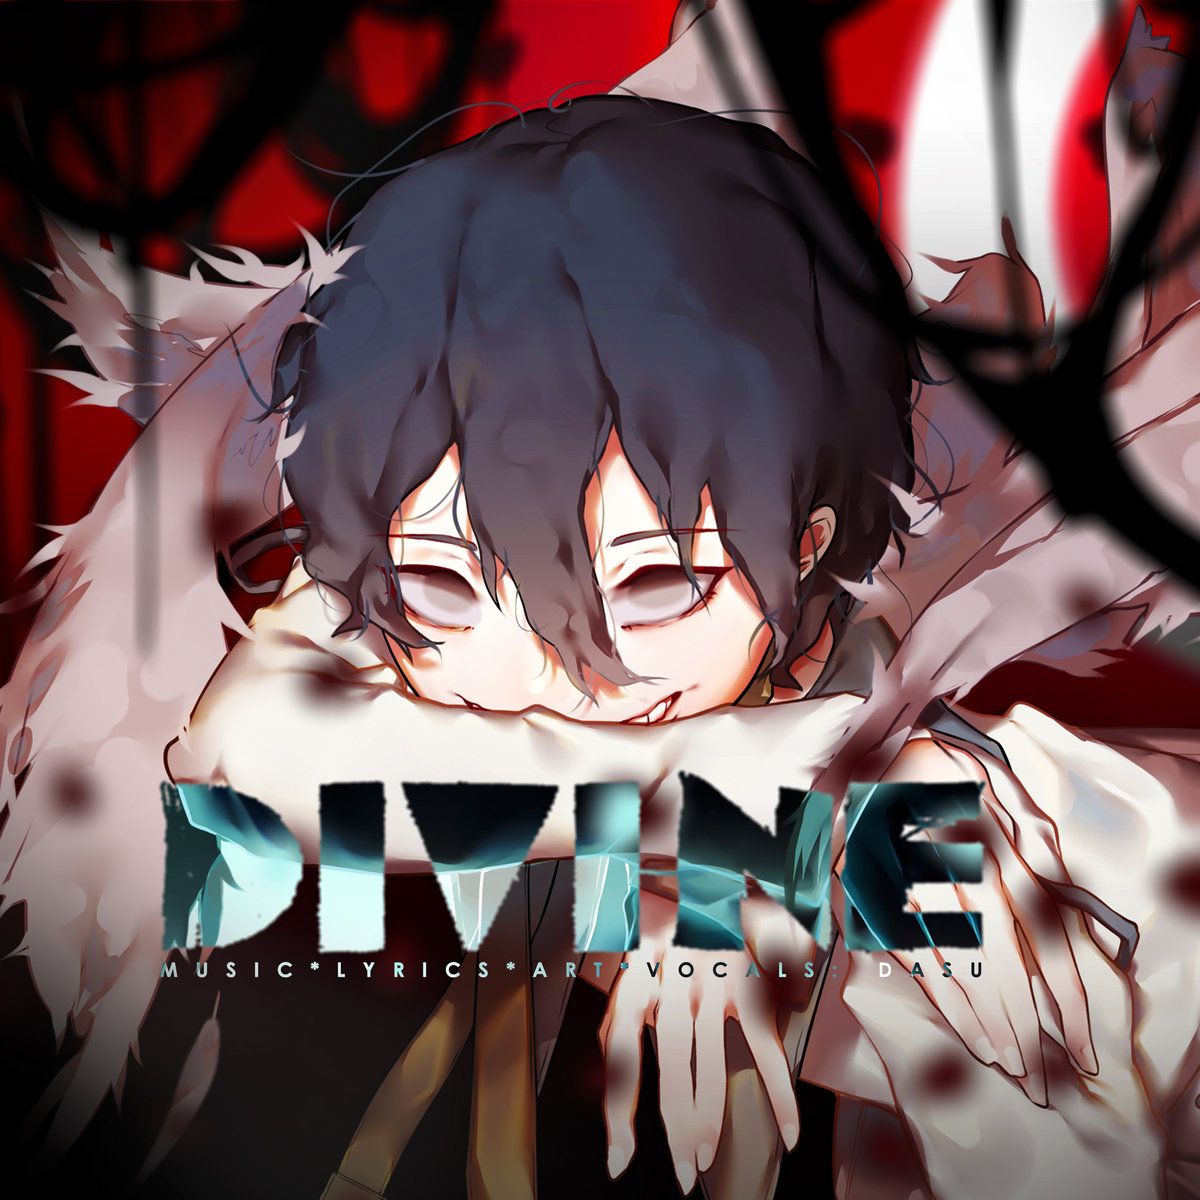 Imagem do álbum Divine do(a) artista Dasu